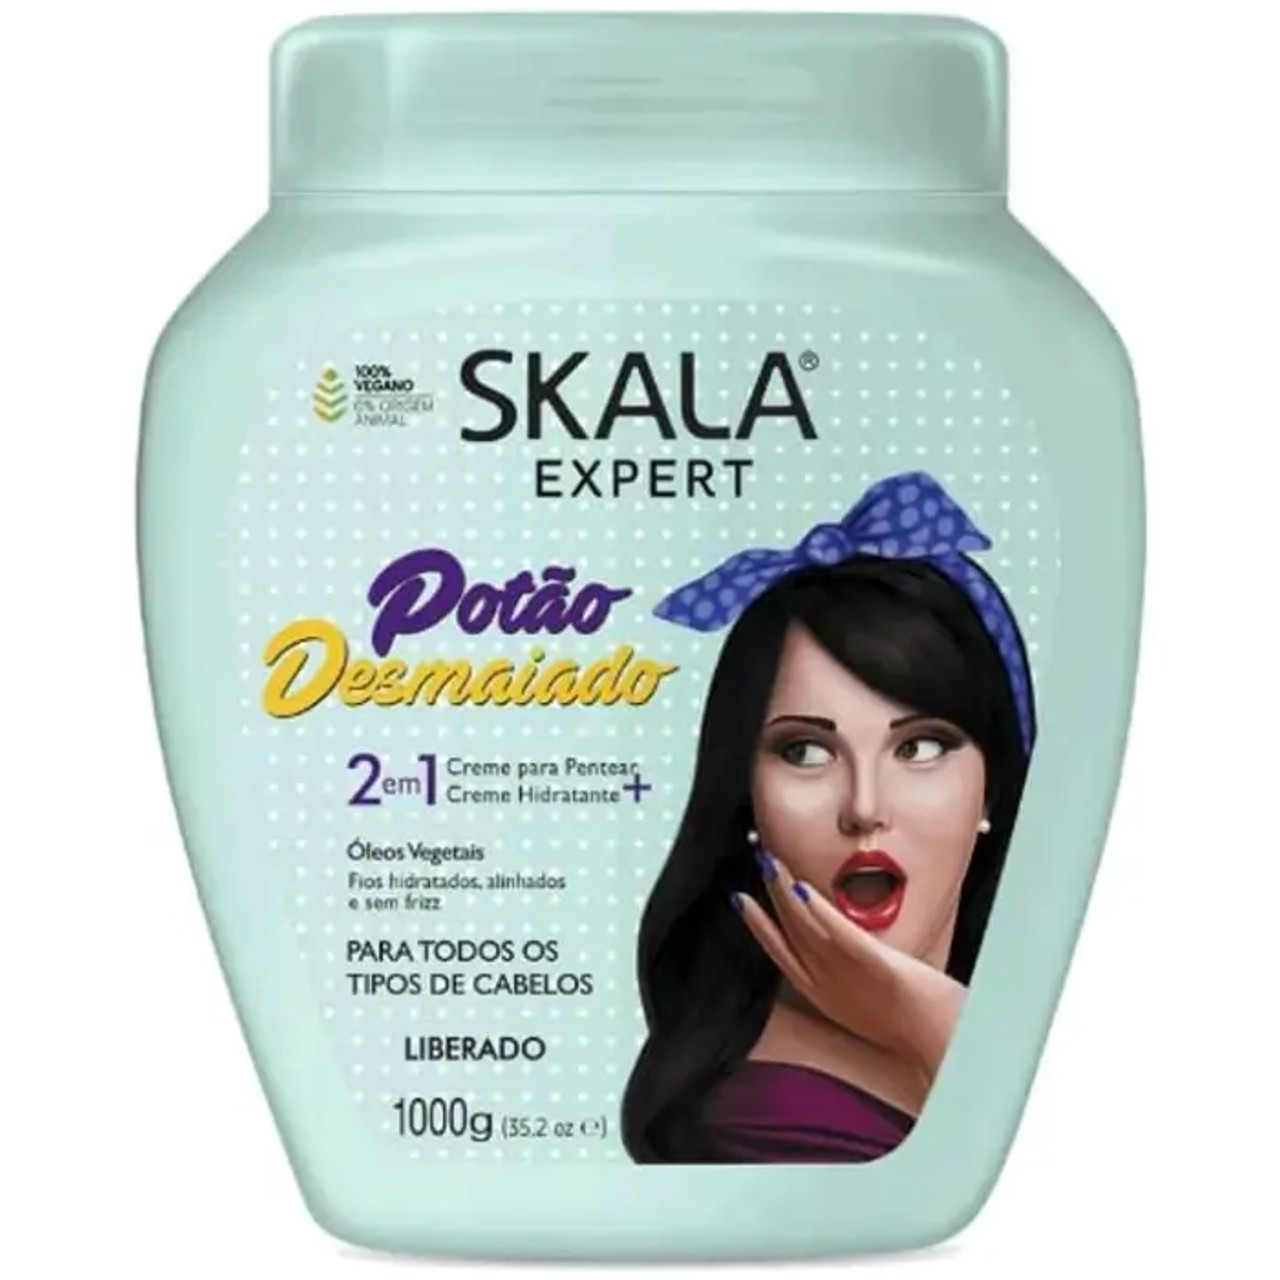 SKALA Expert Potão Desmaiado Hair Cream 6-CASE - 1000g Each | Silky Smooth Hair - Chicken Pieces